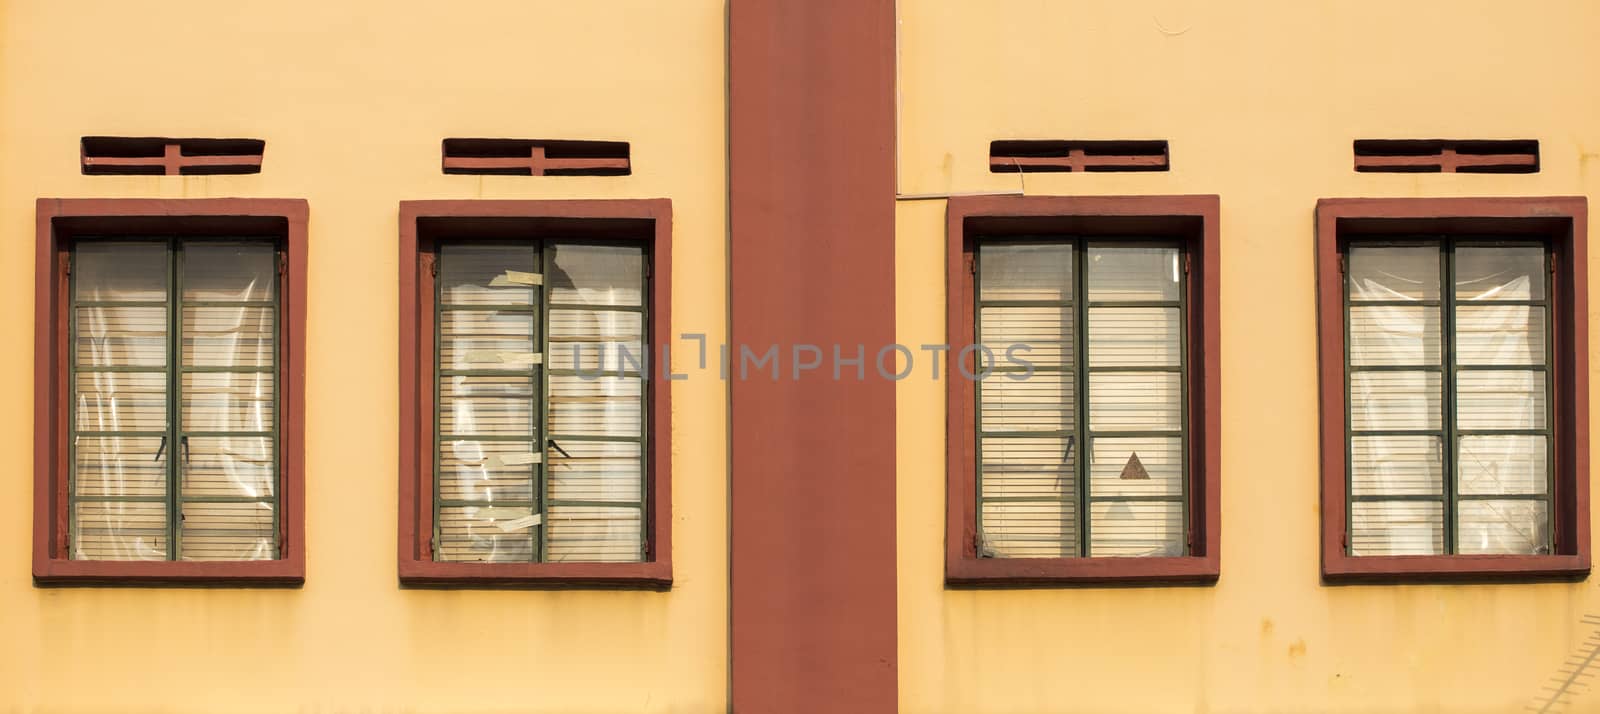 Vintage windows by 2nix